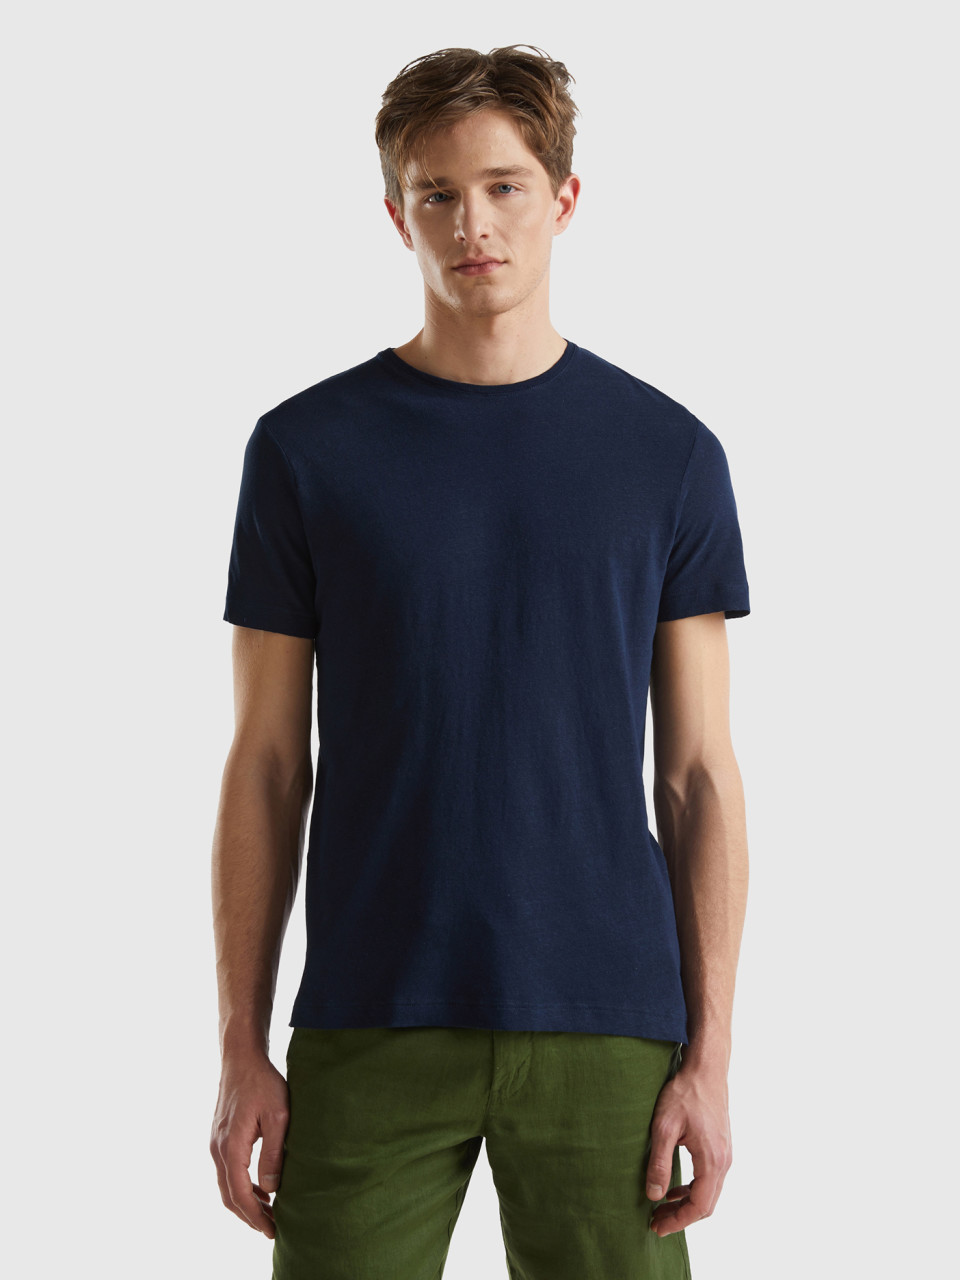 Benetton, Camiseta De Lino Mixto, Azul Oscuro, Hombre